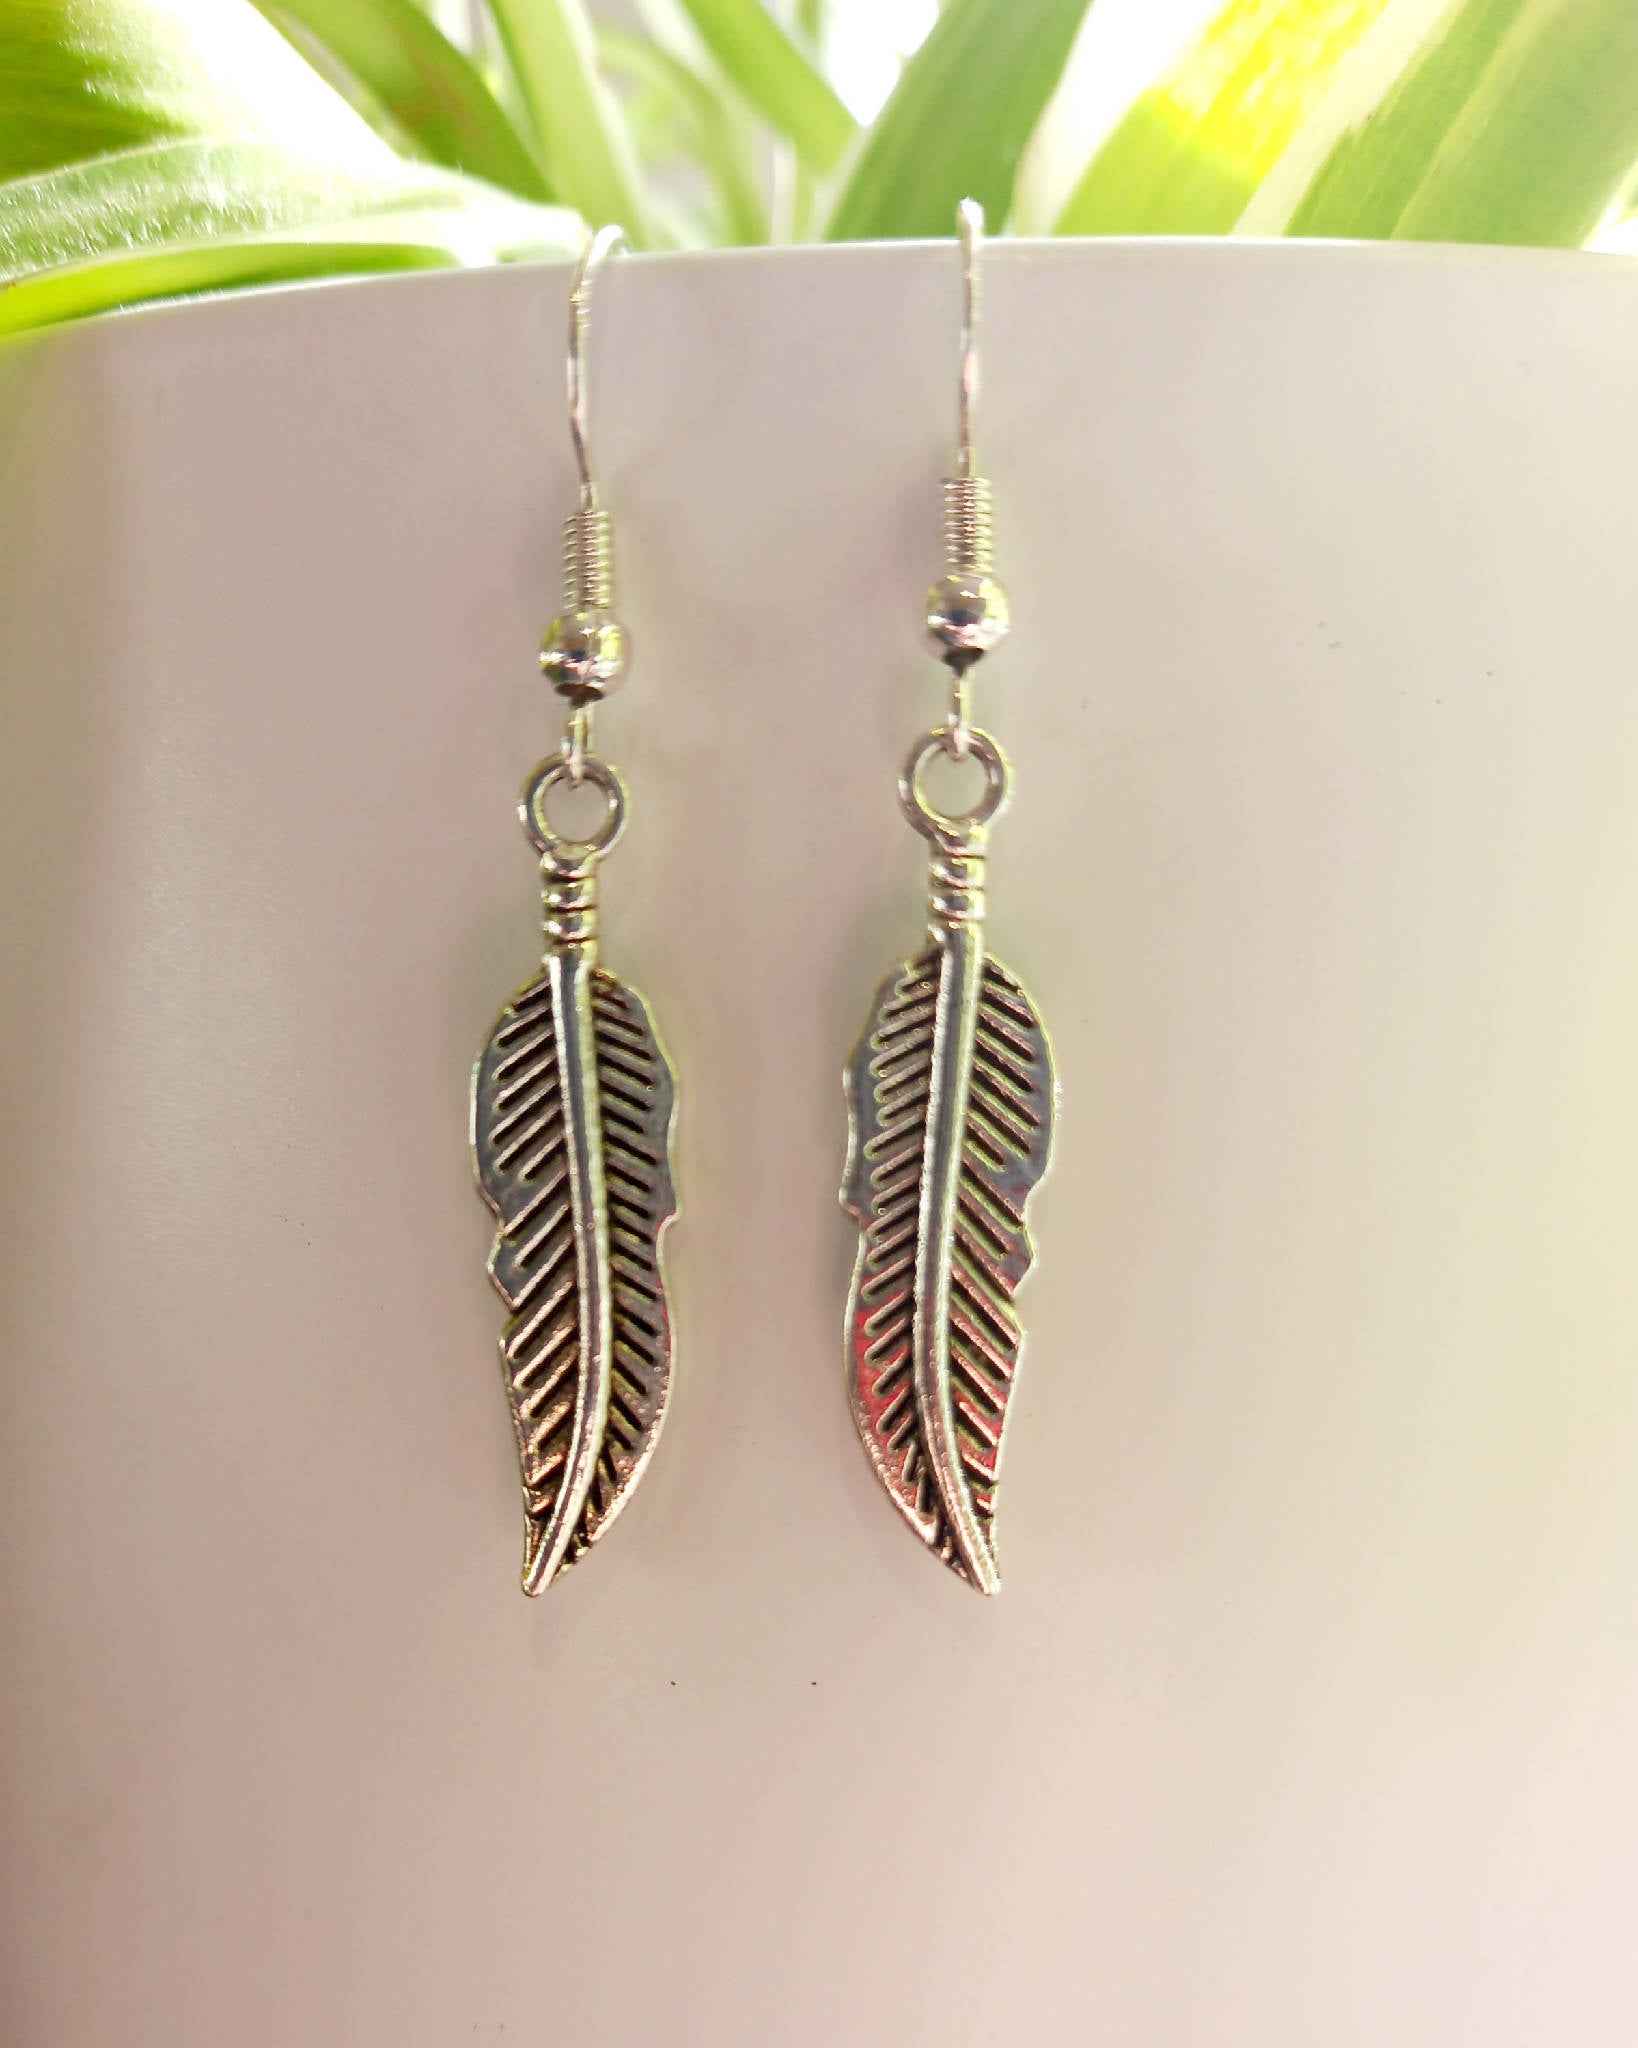 Silver Feather earrings